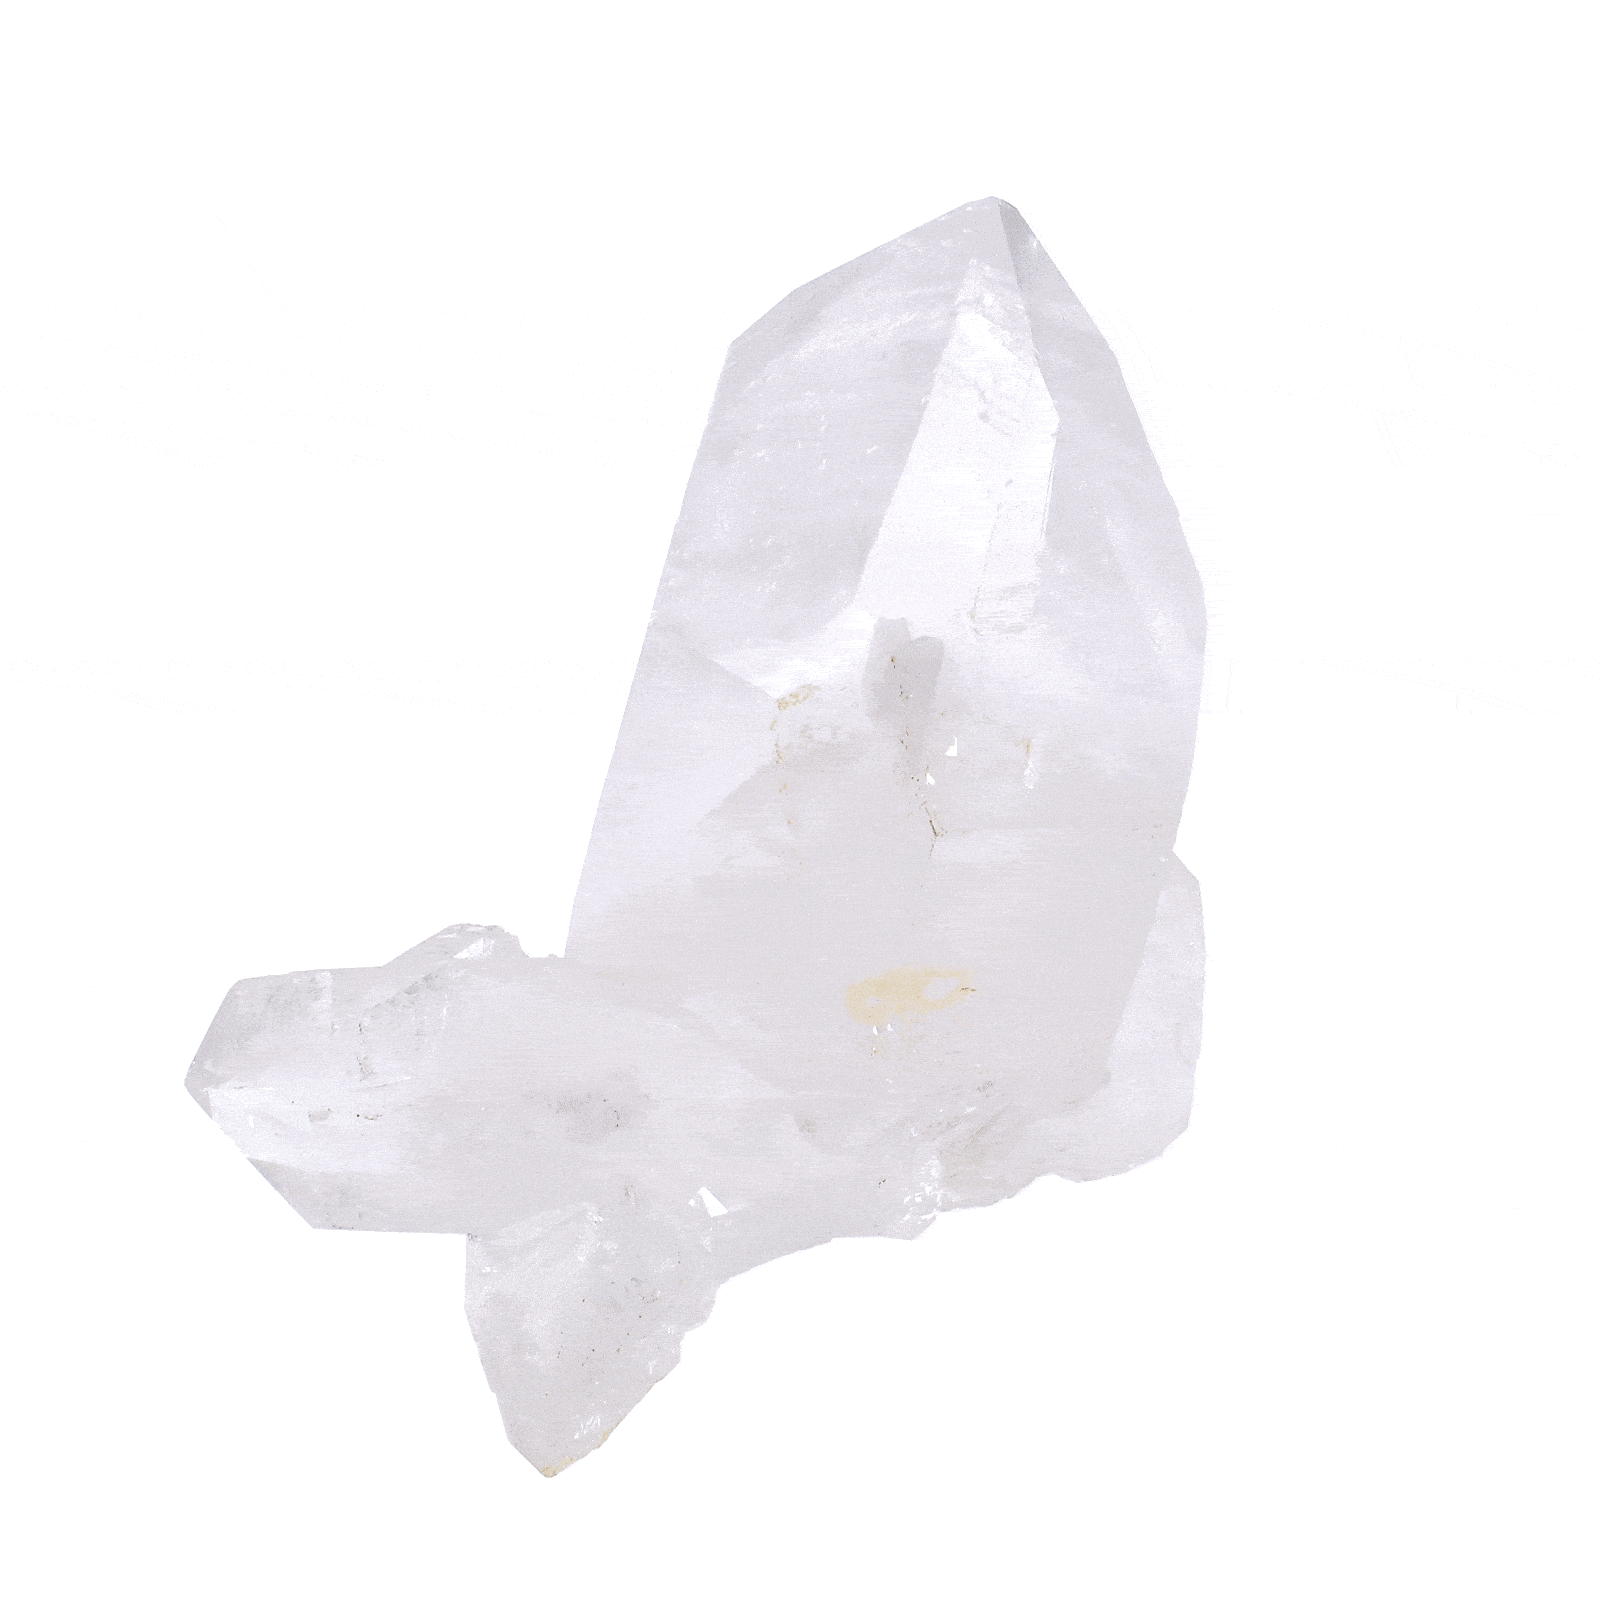 Φυσικό κρύσταλλο Χαλαζία, μεγέθους 7,5cm. Αγοράστε online shop.